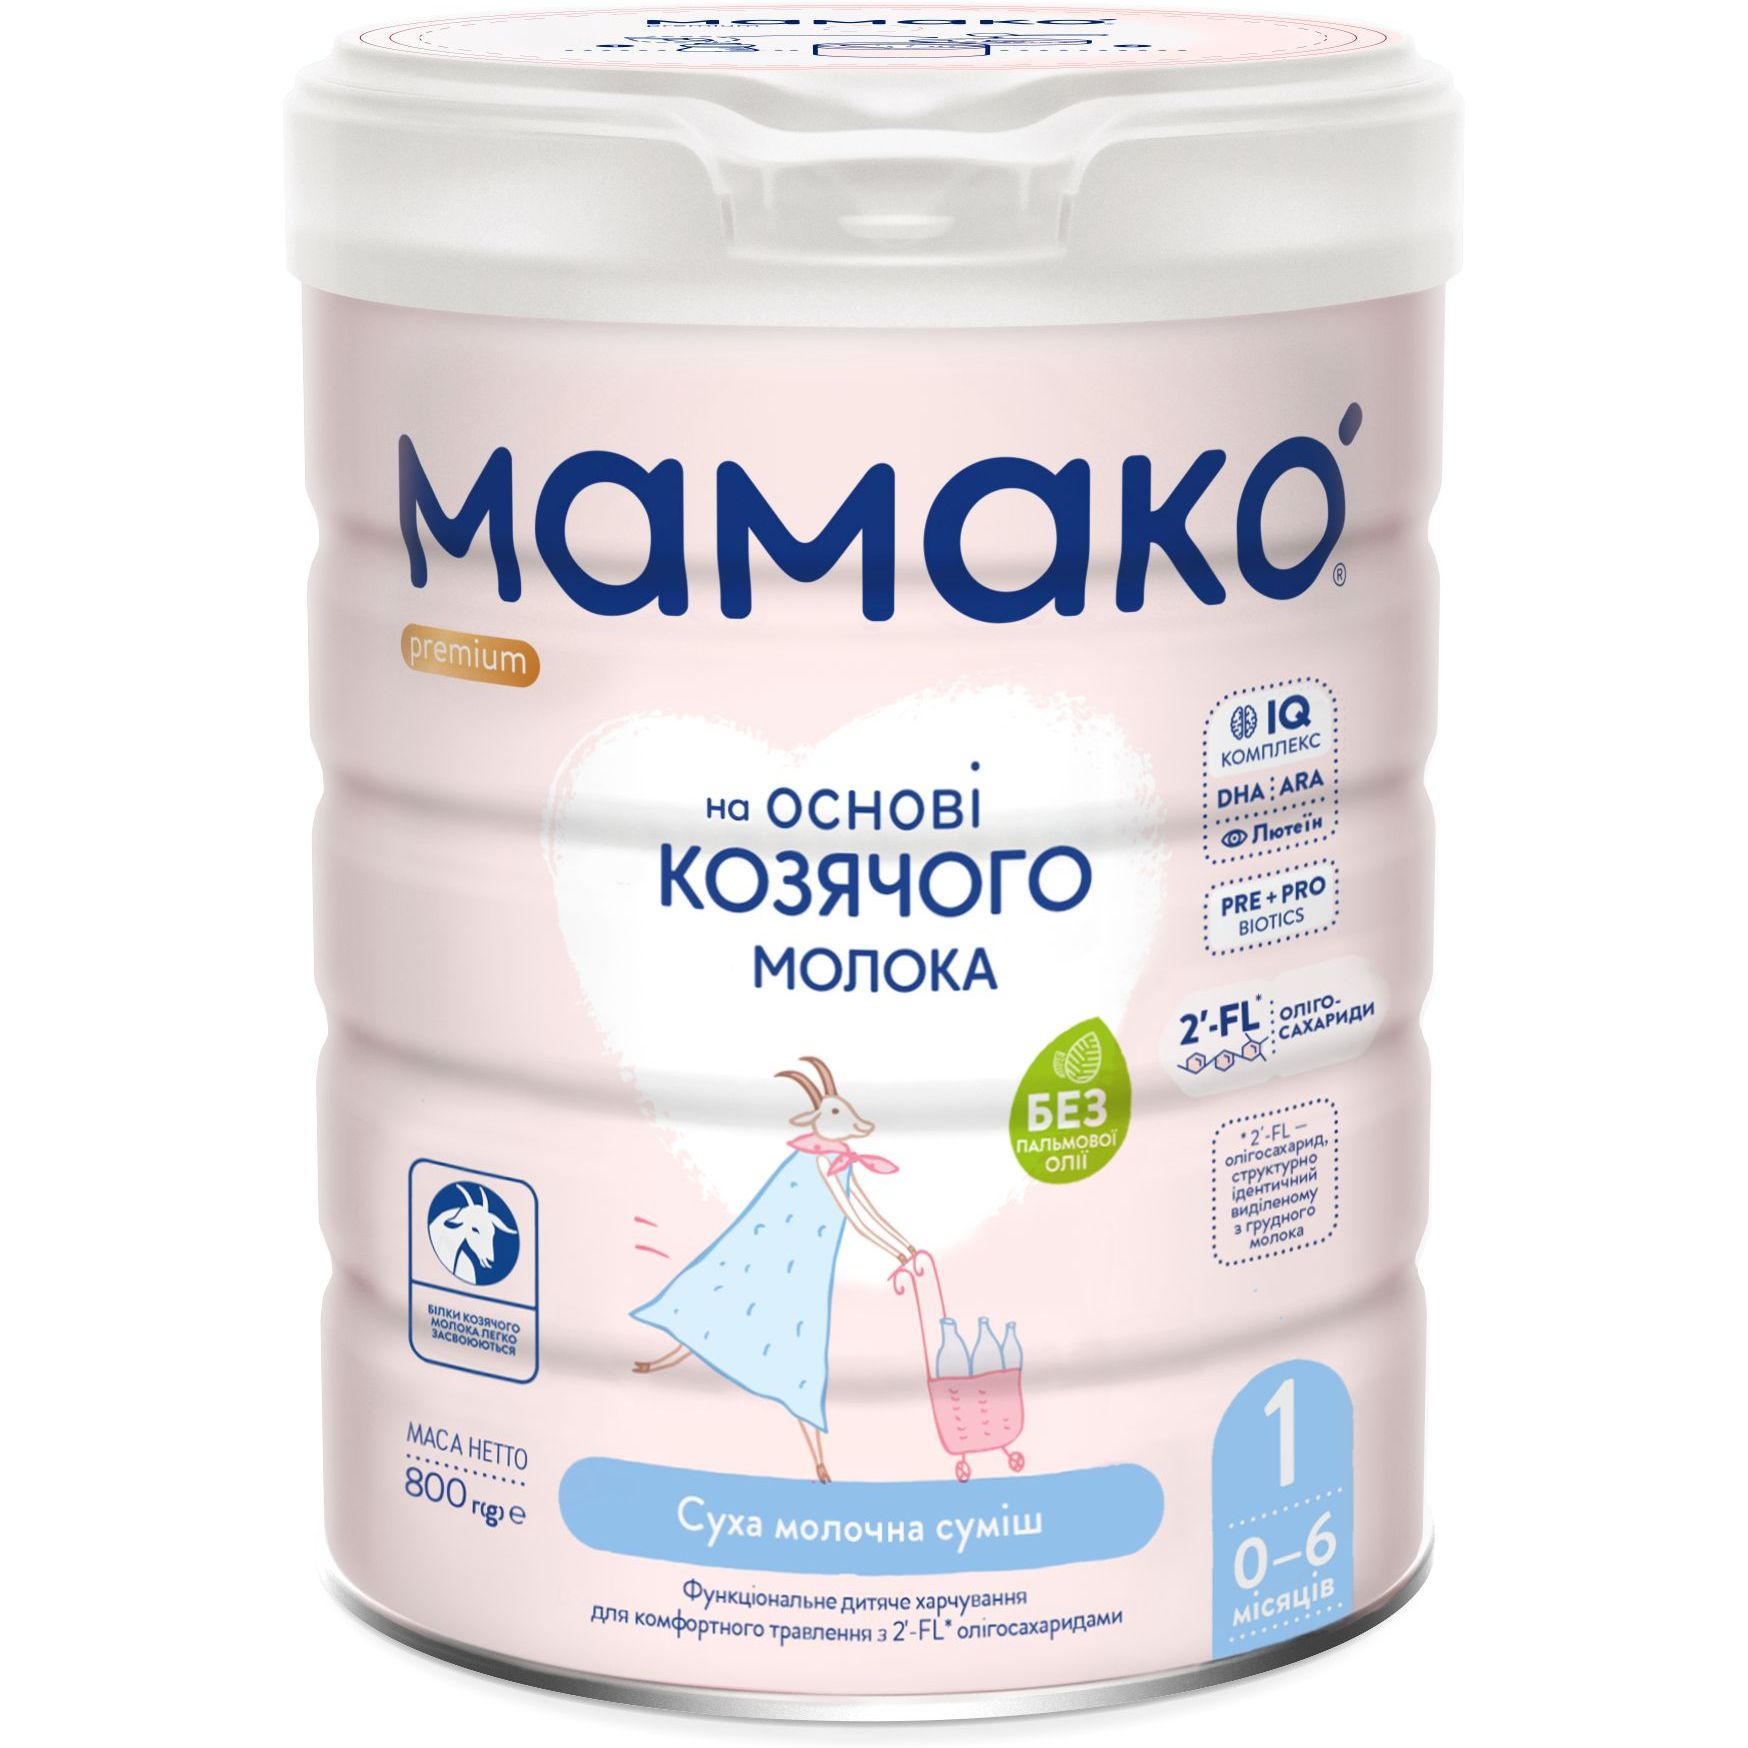 Суха молочна суміш МАМАКО Premium 1, 800 г - фото 1